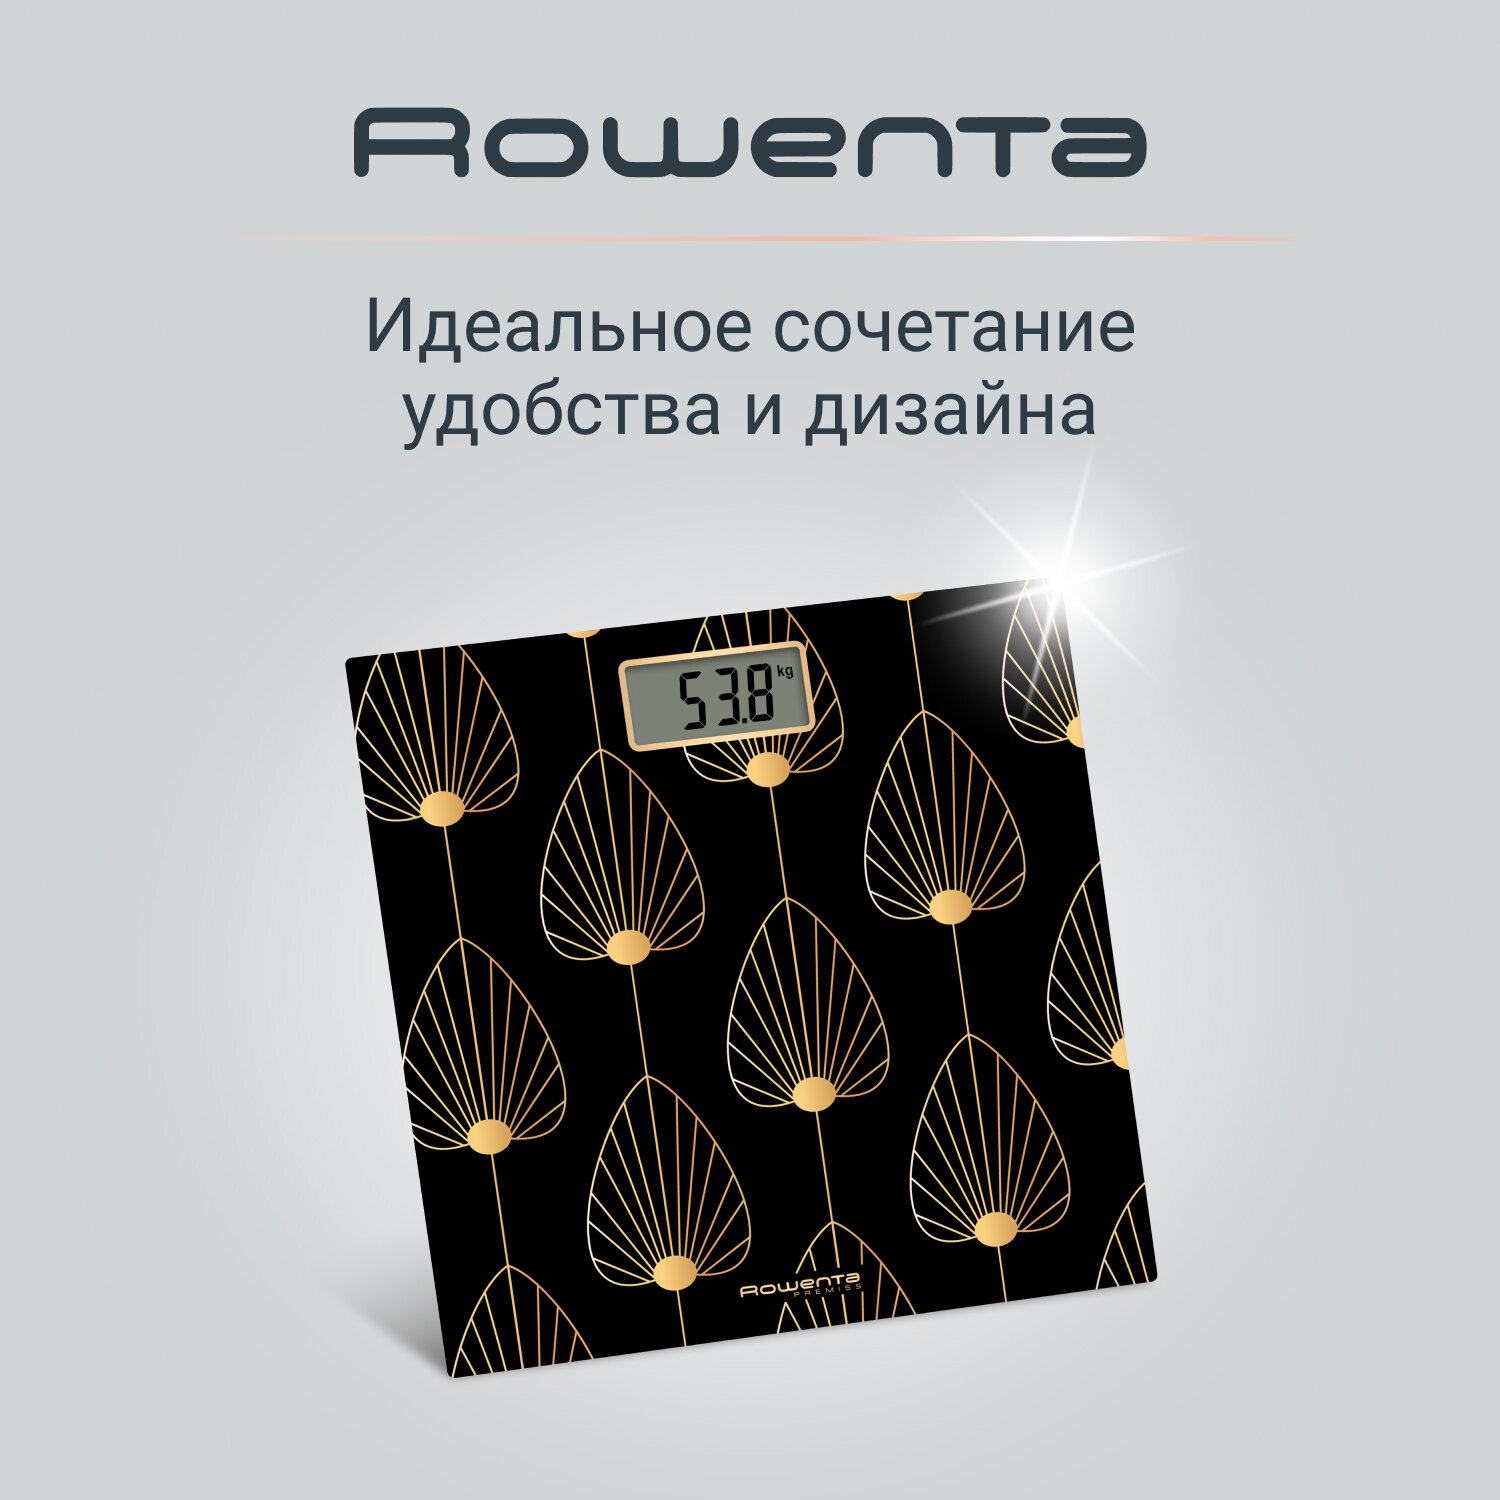 Напольные весы Rowenta Premiss BS1438V0, черный, до 150 кг, автоотключение, цифровой дисплей